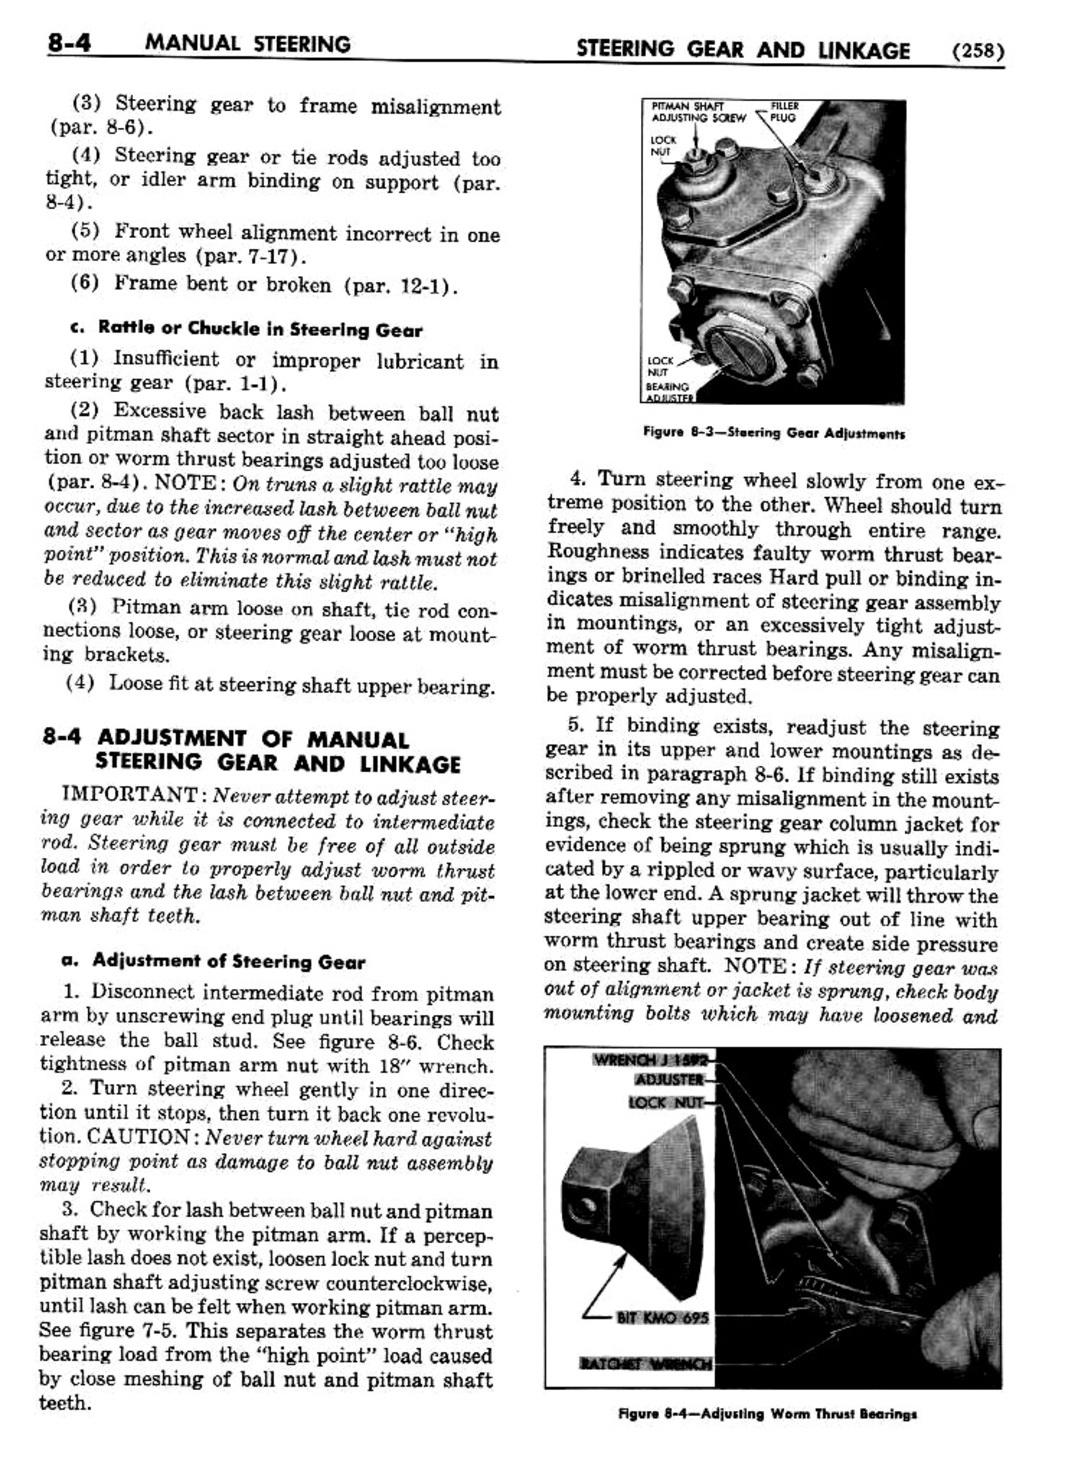 n_09 1954 Buick Shop Manual - Steering-004-004.jpg